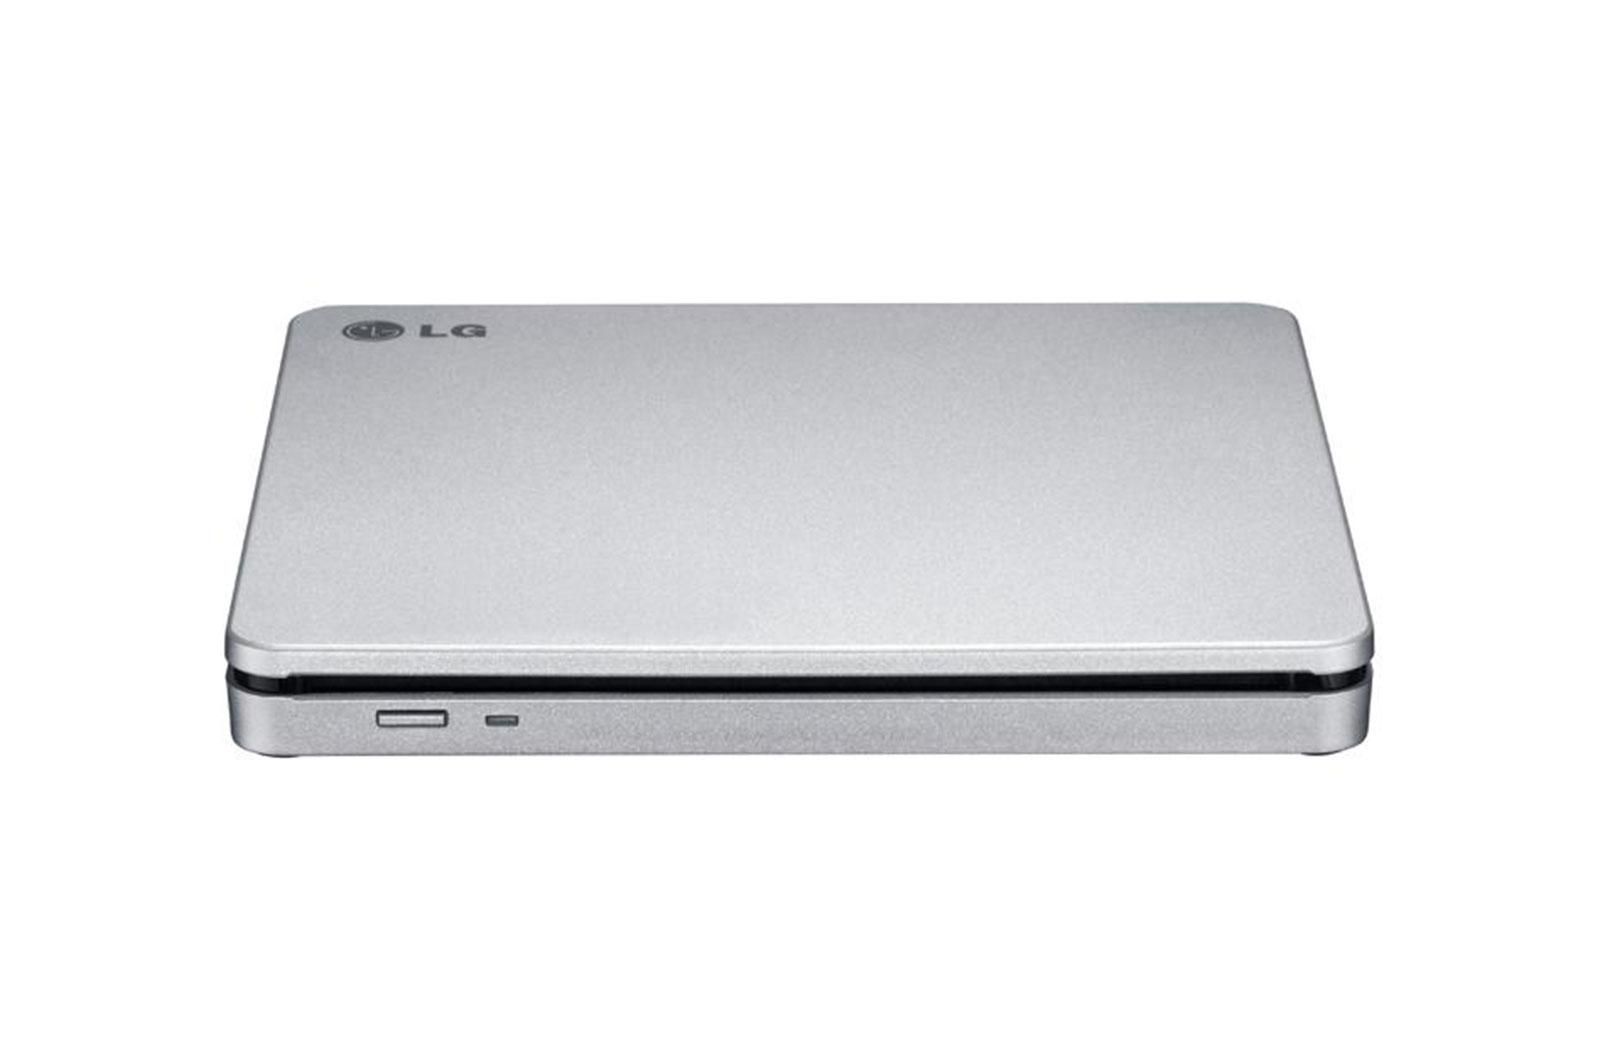 Ultra Slim Portable DVD-R Black Hitachi-LG GP60NB60.AUAE12B, GP60NB60 Series, DVD Write /Read Speed: 8x, CD Write/Read Speed: 24x, USB 2.0, Buffer 0.75MB, 144 mm x 137.5 mm x 14 mm._2